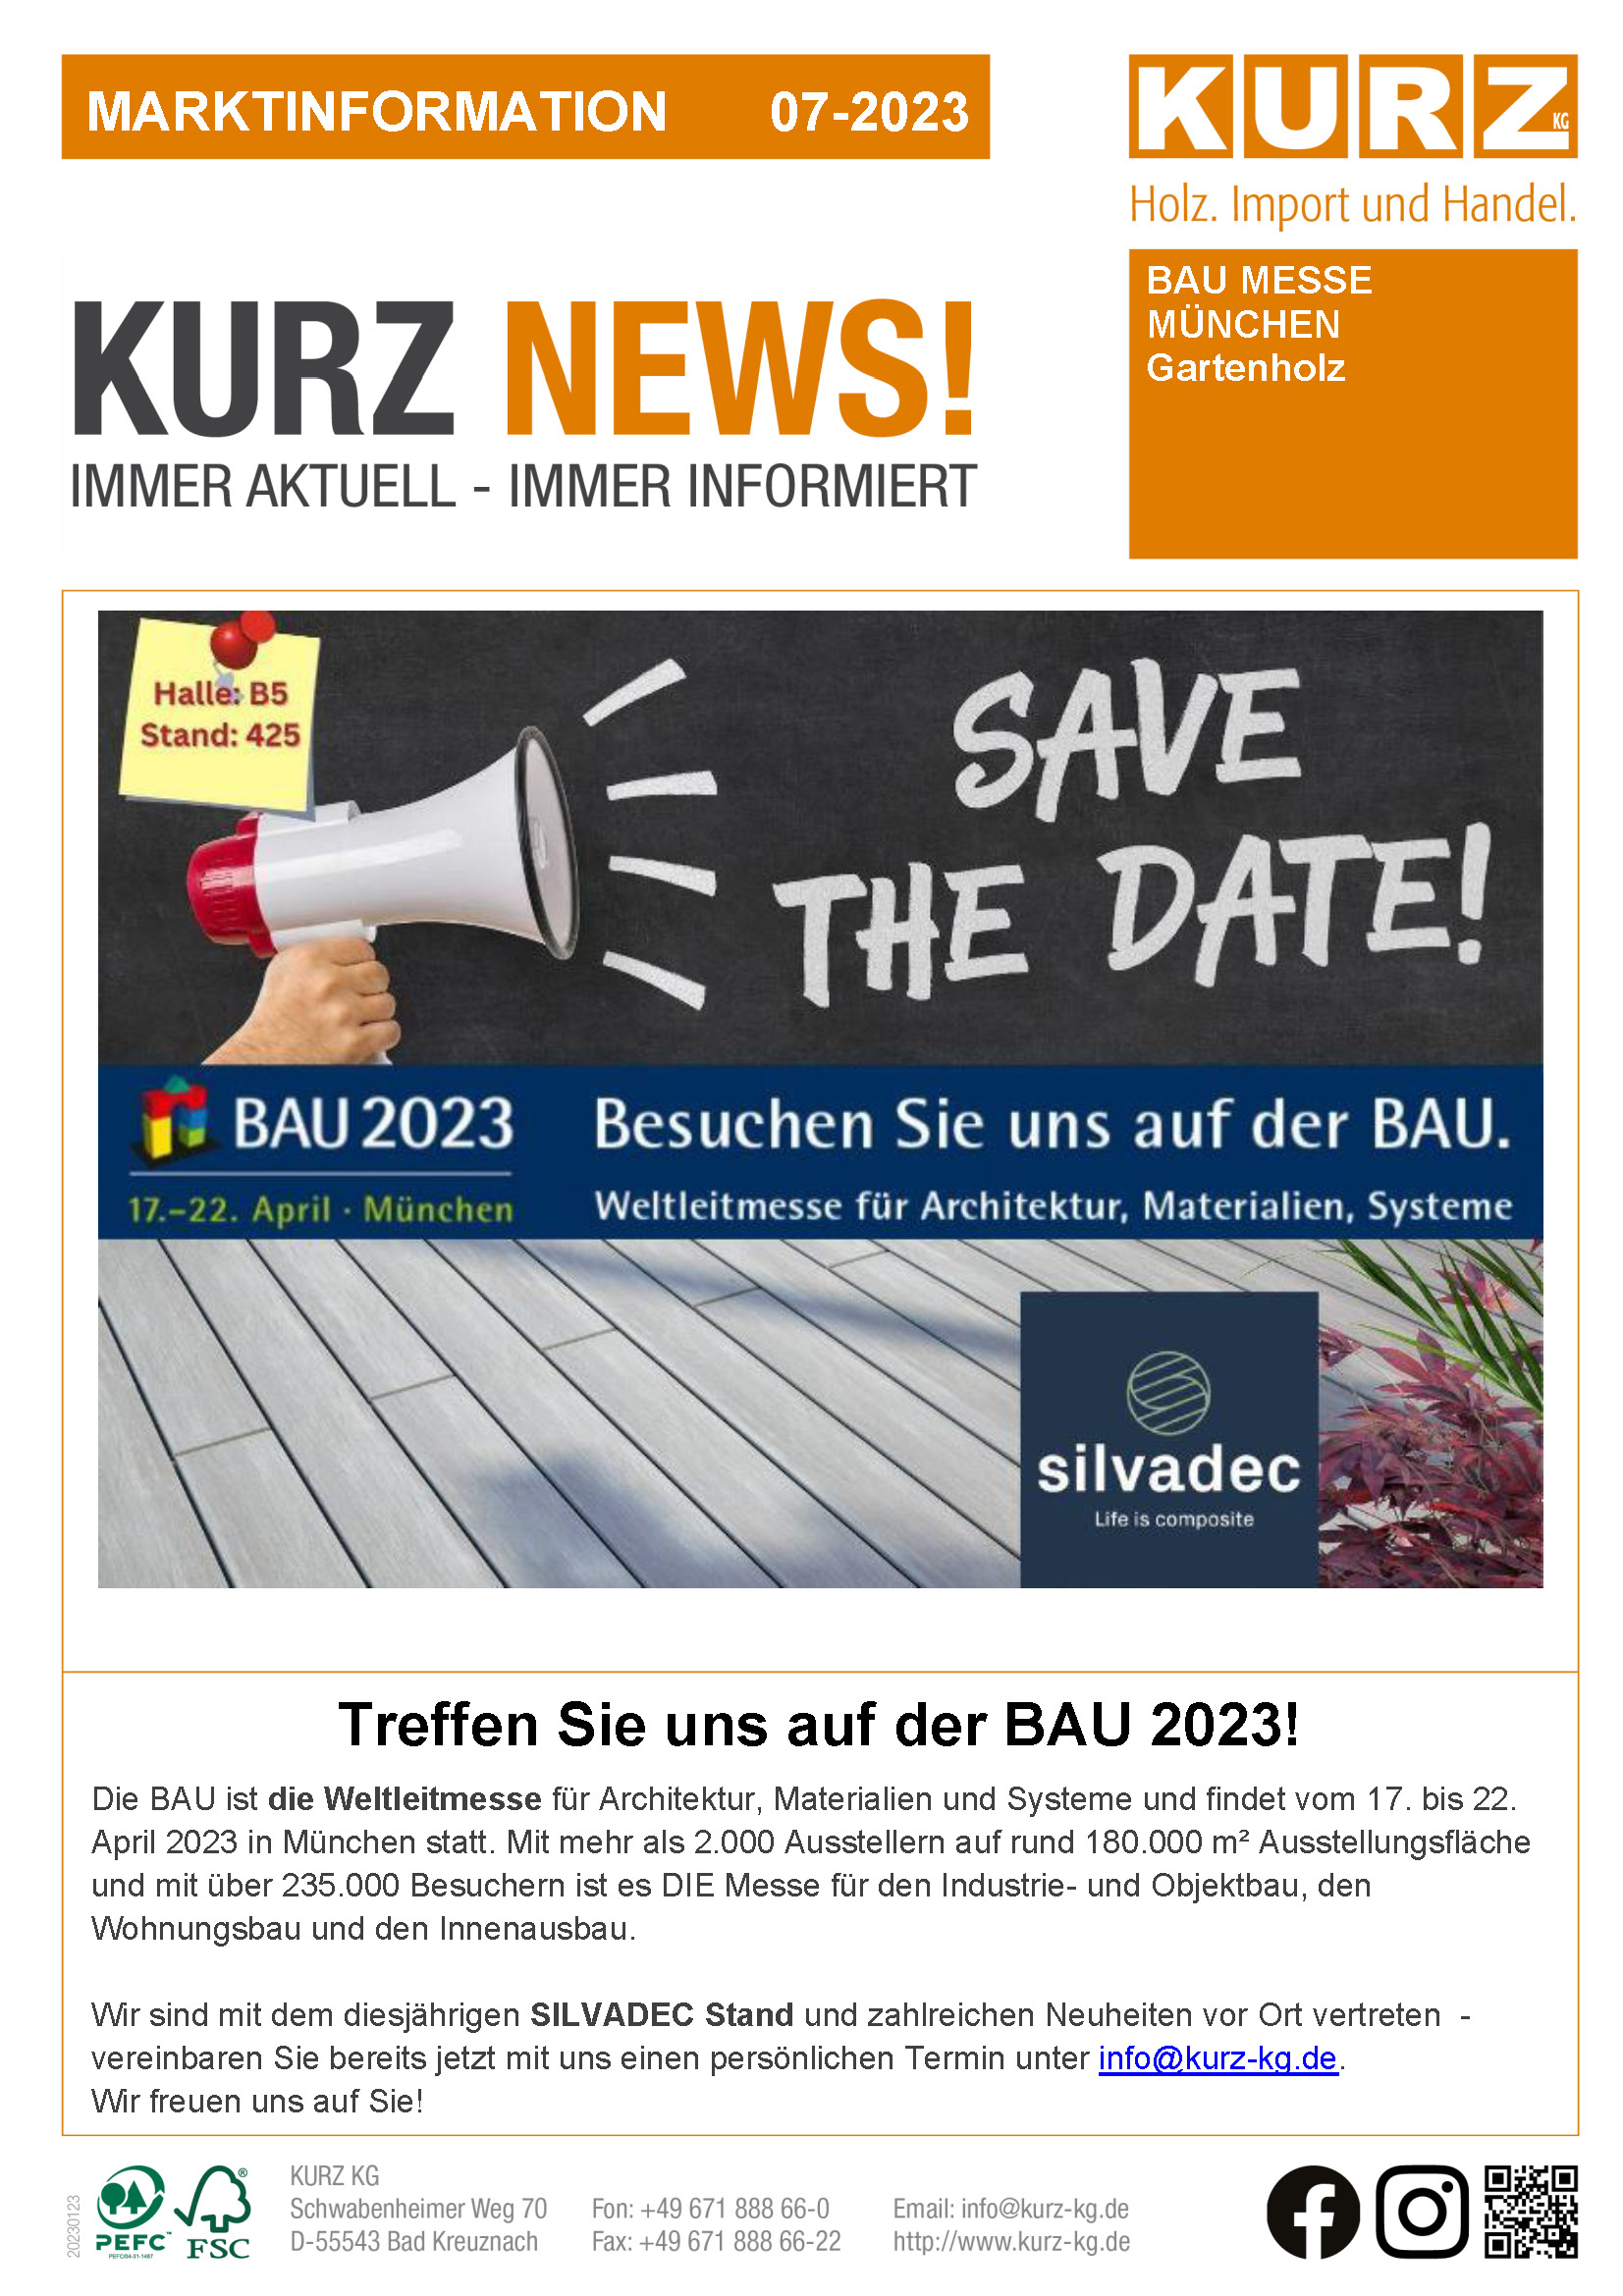 20230123-NEWSLETTER-Holz-Import-und-Handel-Save-The-Date_BAU_07_2023-Titelbild